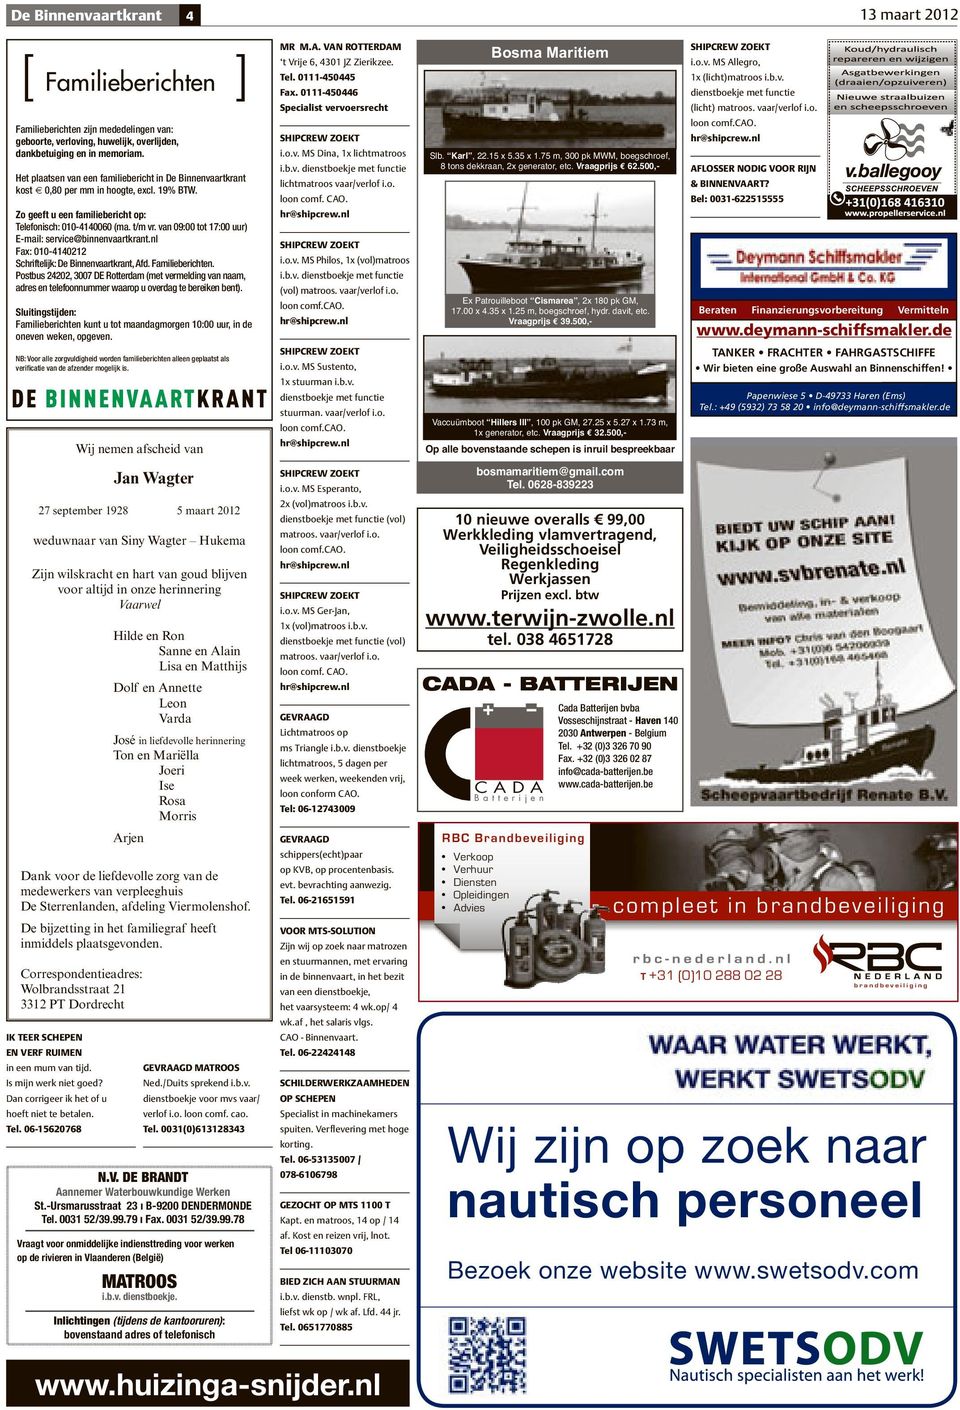 van 09:00 tot 17:00 uur) E-mail: service@binnenvaartkrant.nl Fax: 010-4140212 Schriftelijk: De Binnenvaartkrant, Afd. Familieberichten.